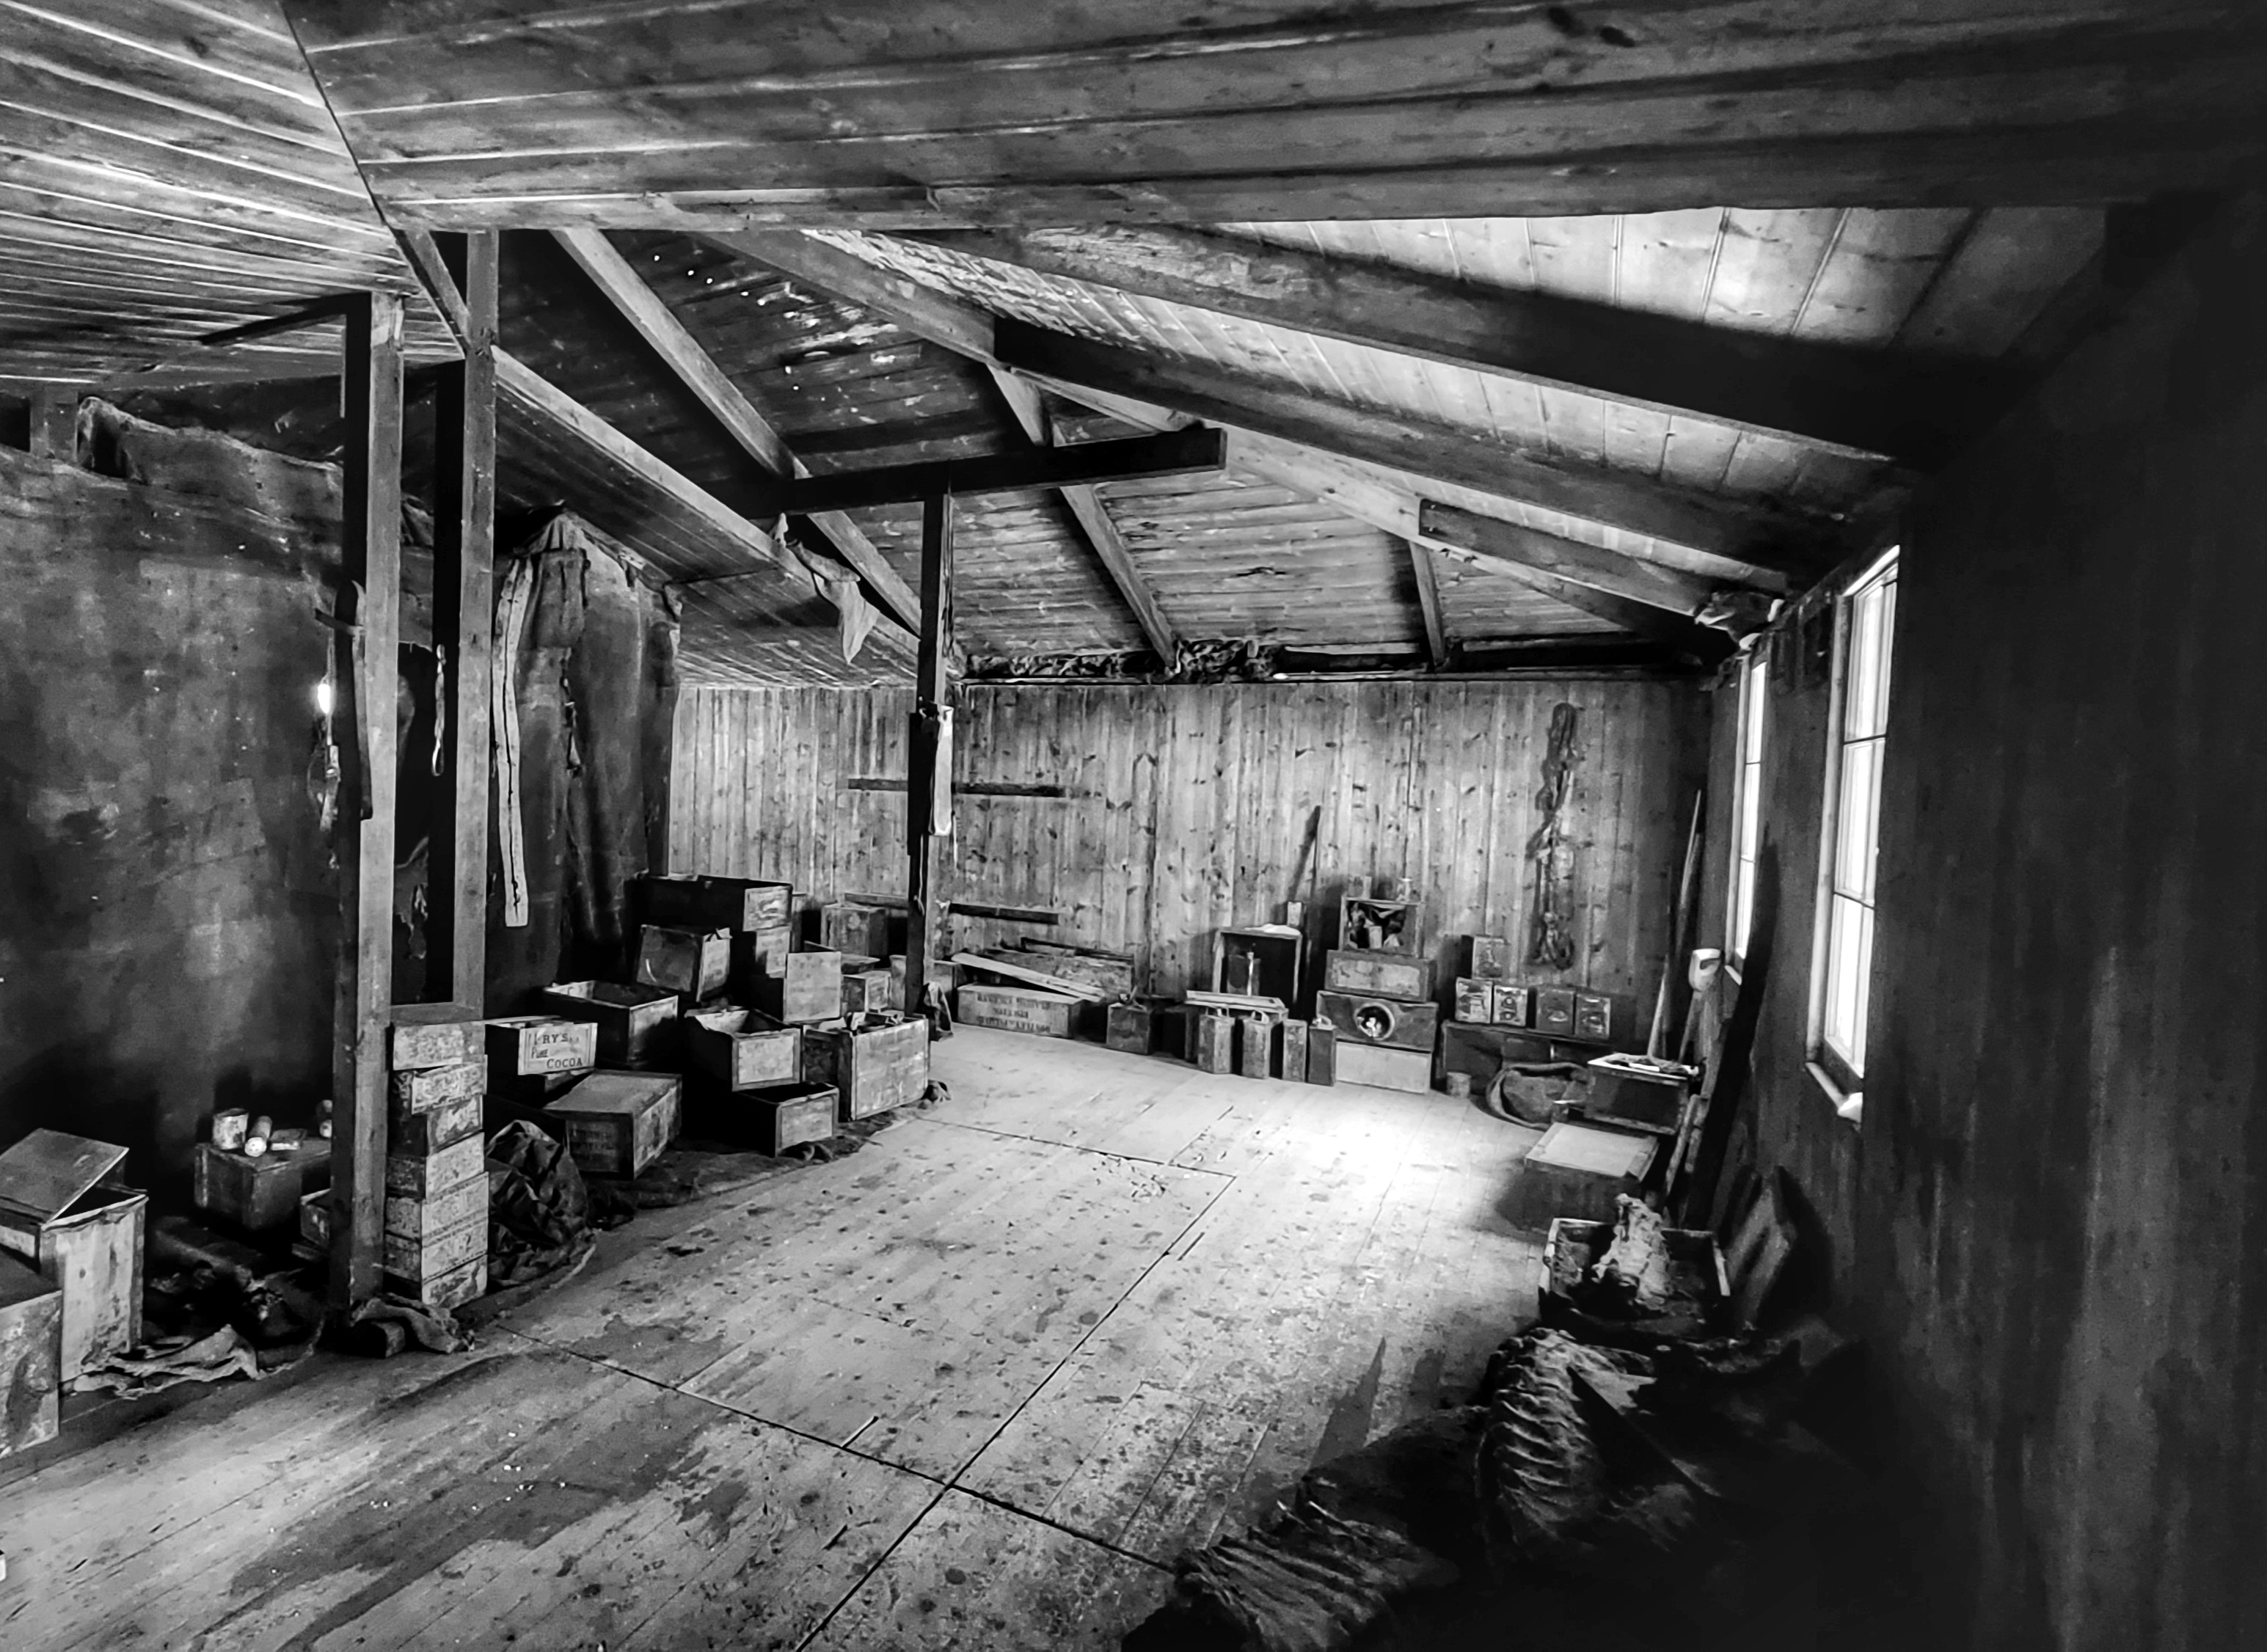 Inside an old wooden hut.